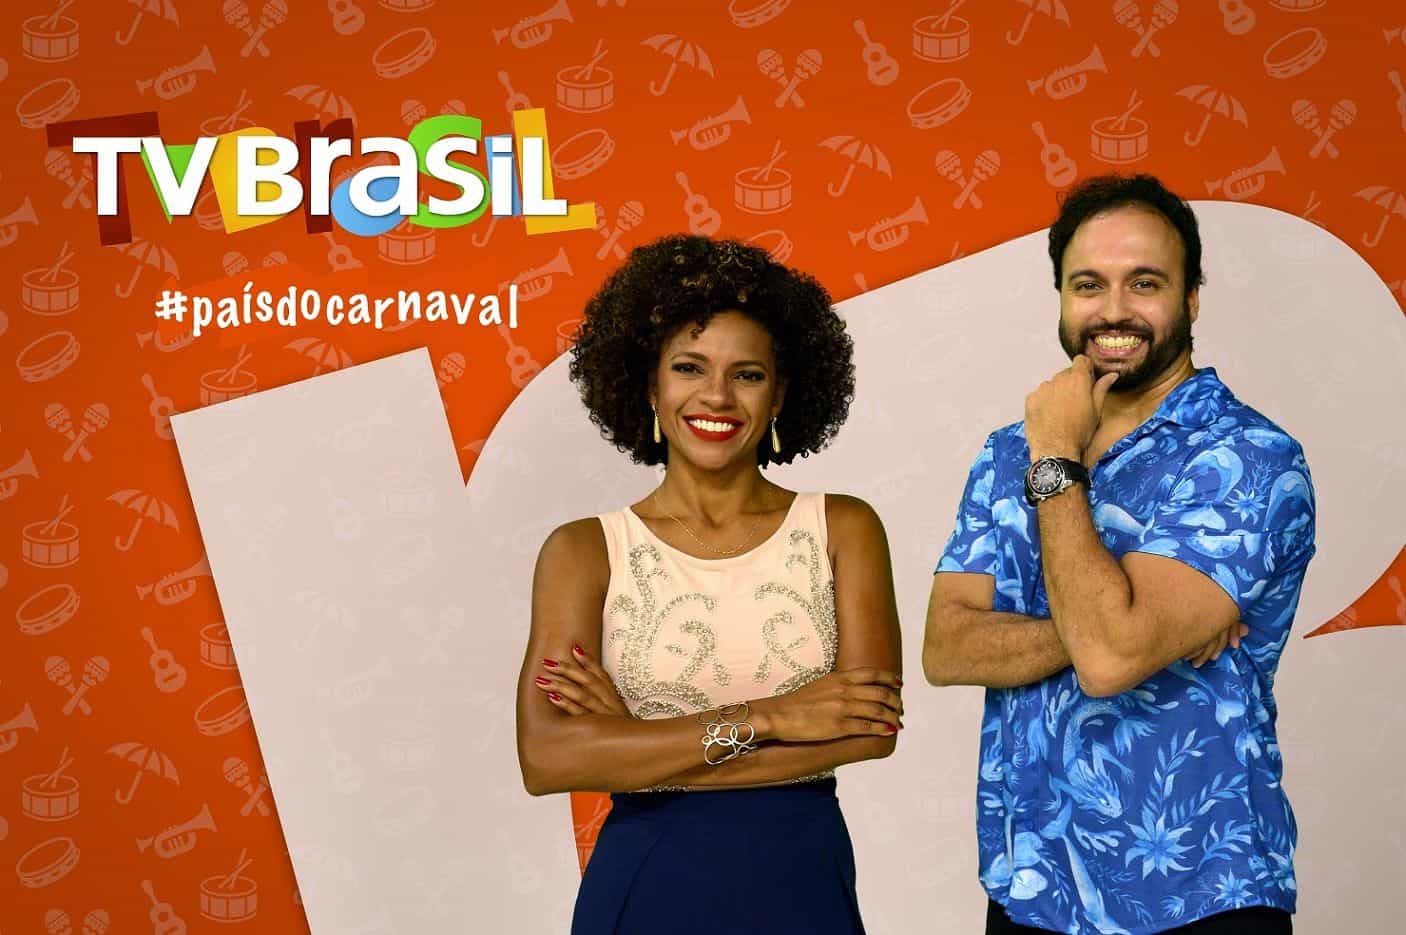 Audiência da TV: Com Desfile das Campeãs do Carnaval do Rio de Janeiro, TV Brasil fica na vice-liderança